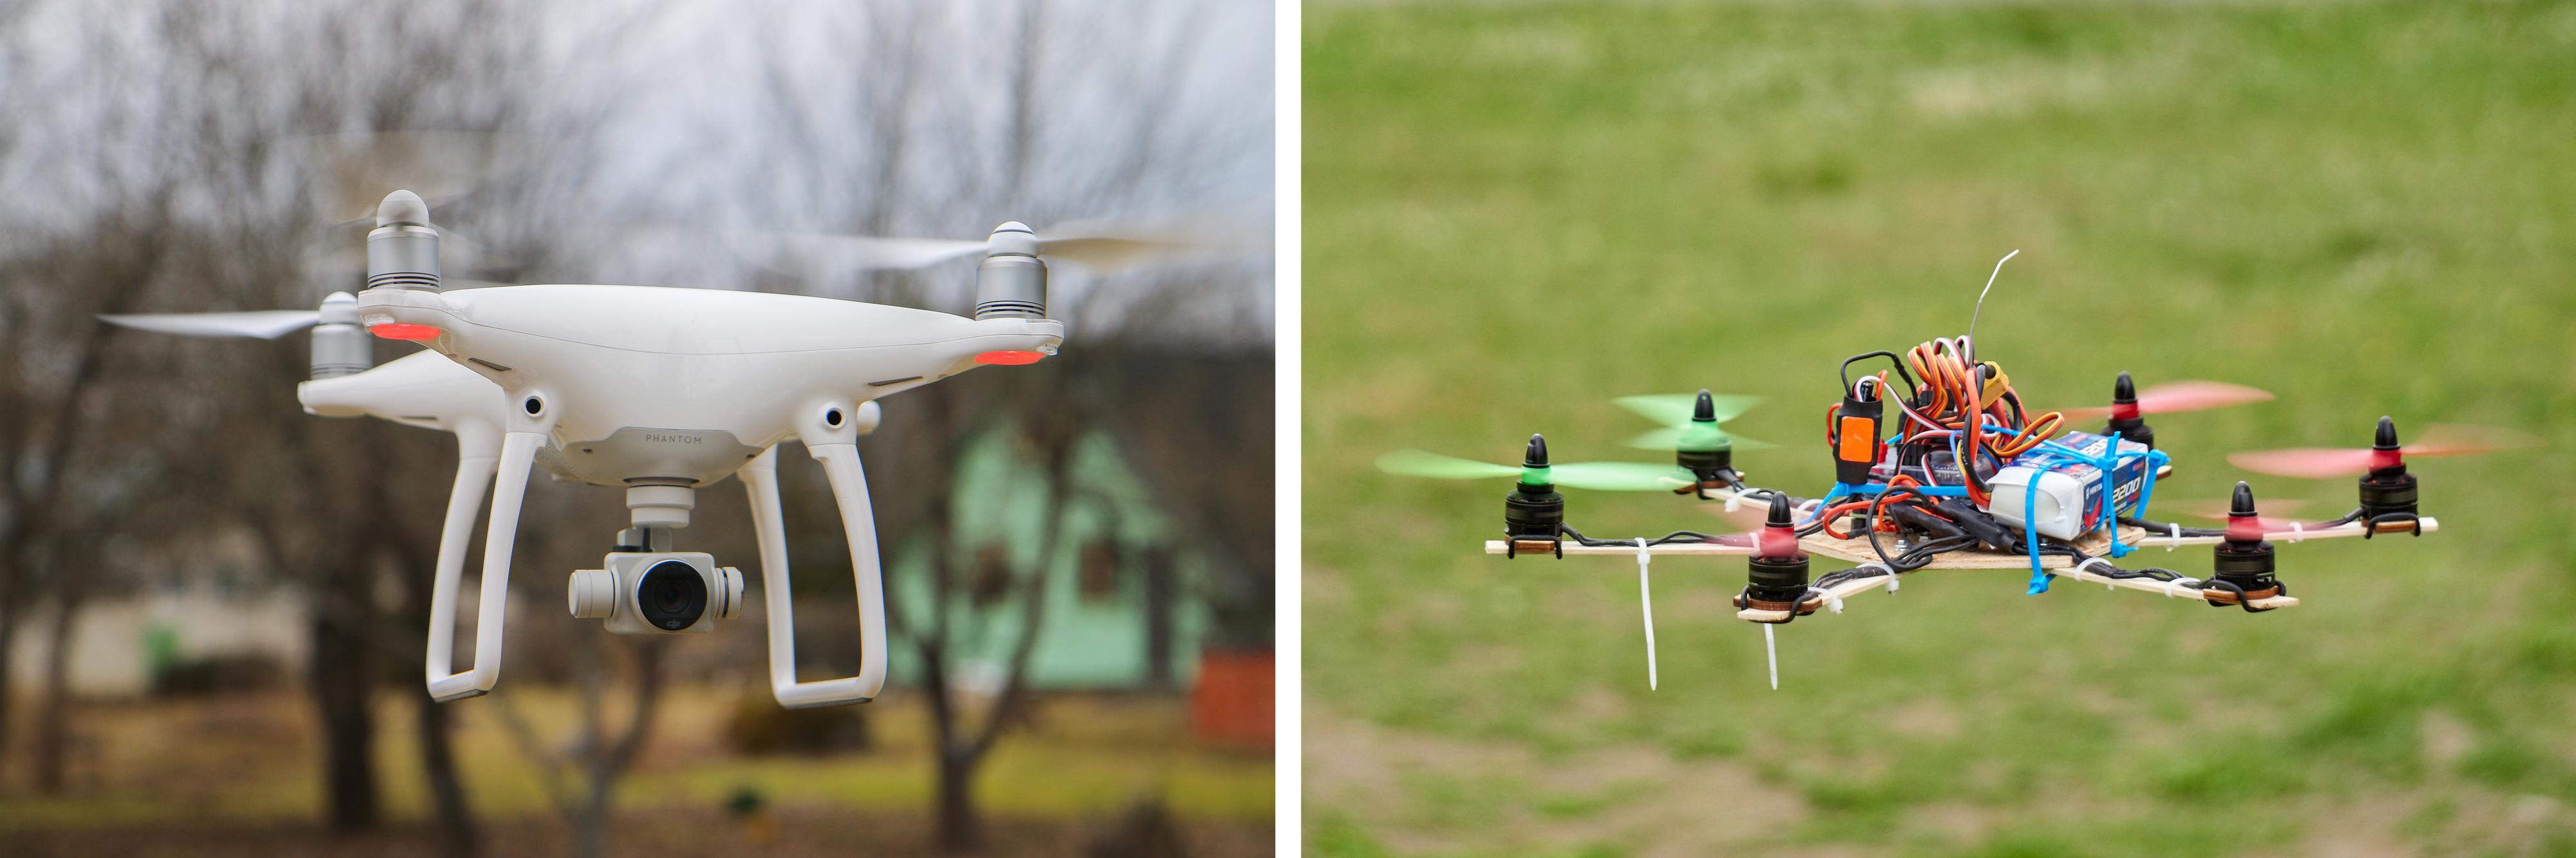 Det er visst fordeler med å eie en drone som den til høyre, kontra den til venstre, her eksemplifisert med DJI Phantom 4.